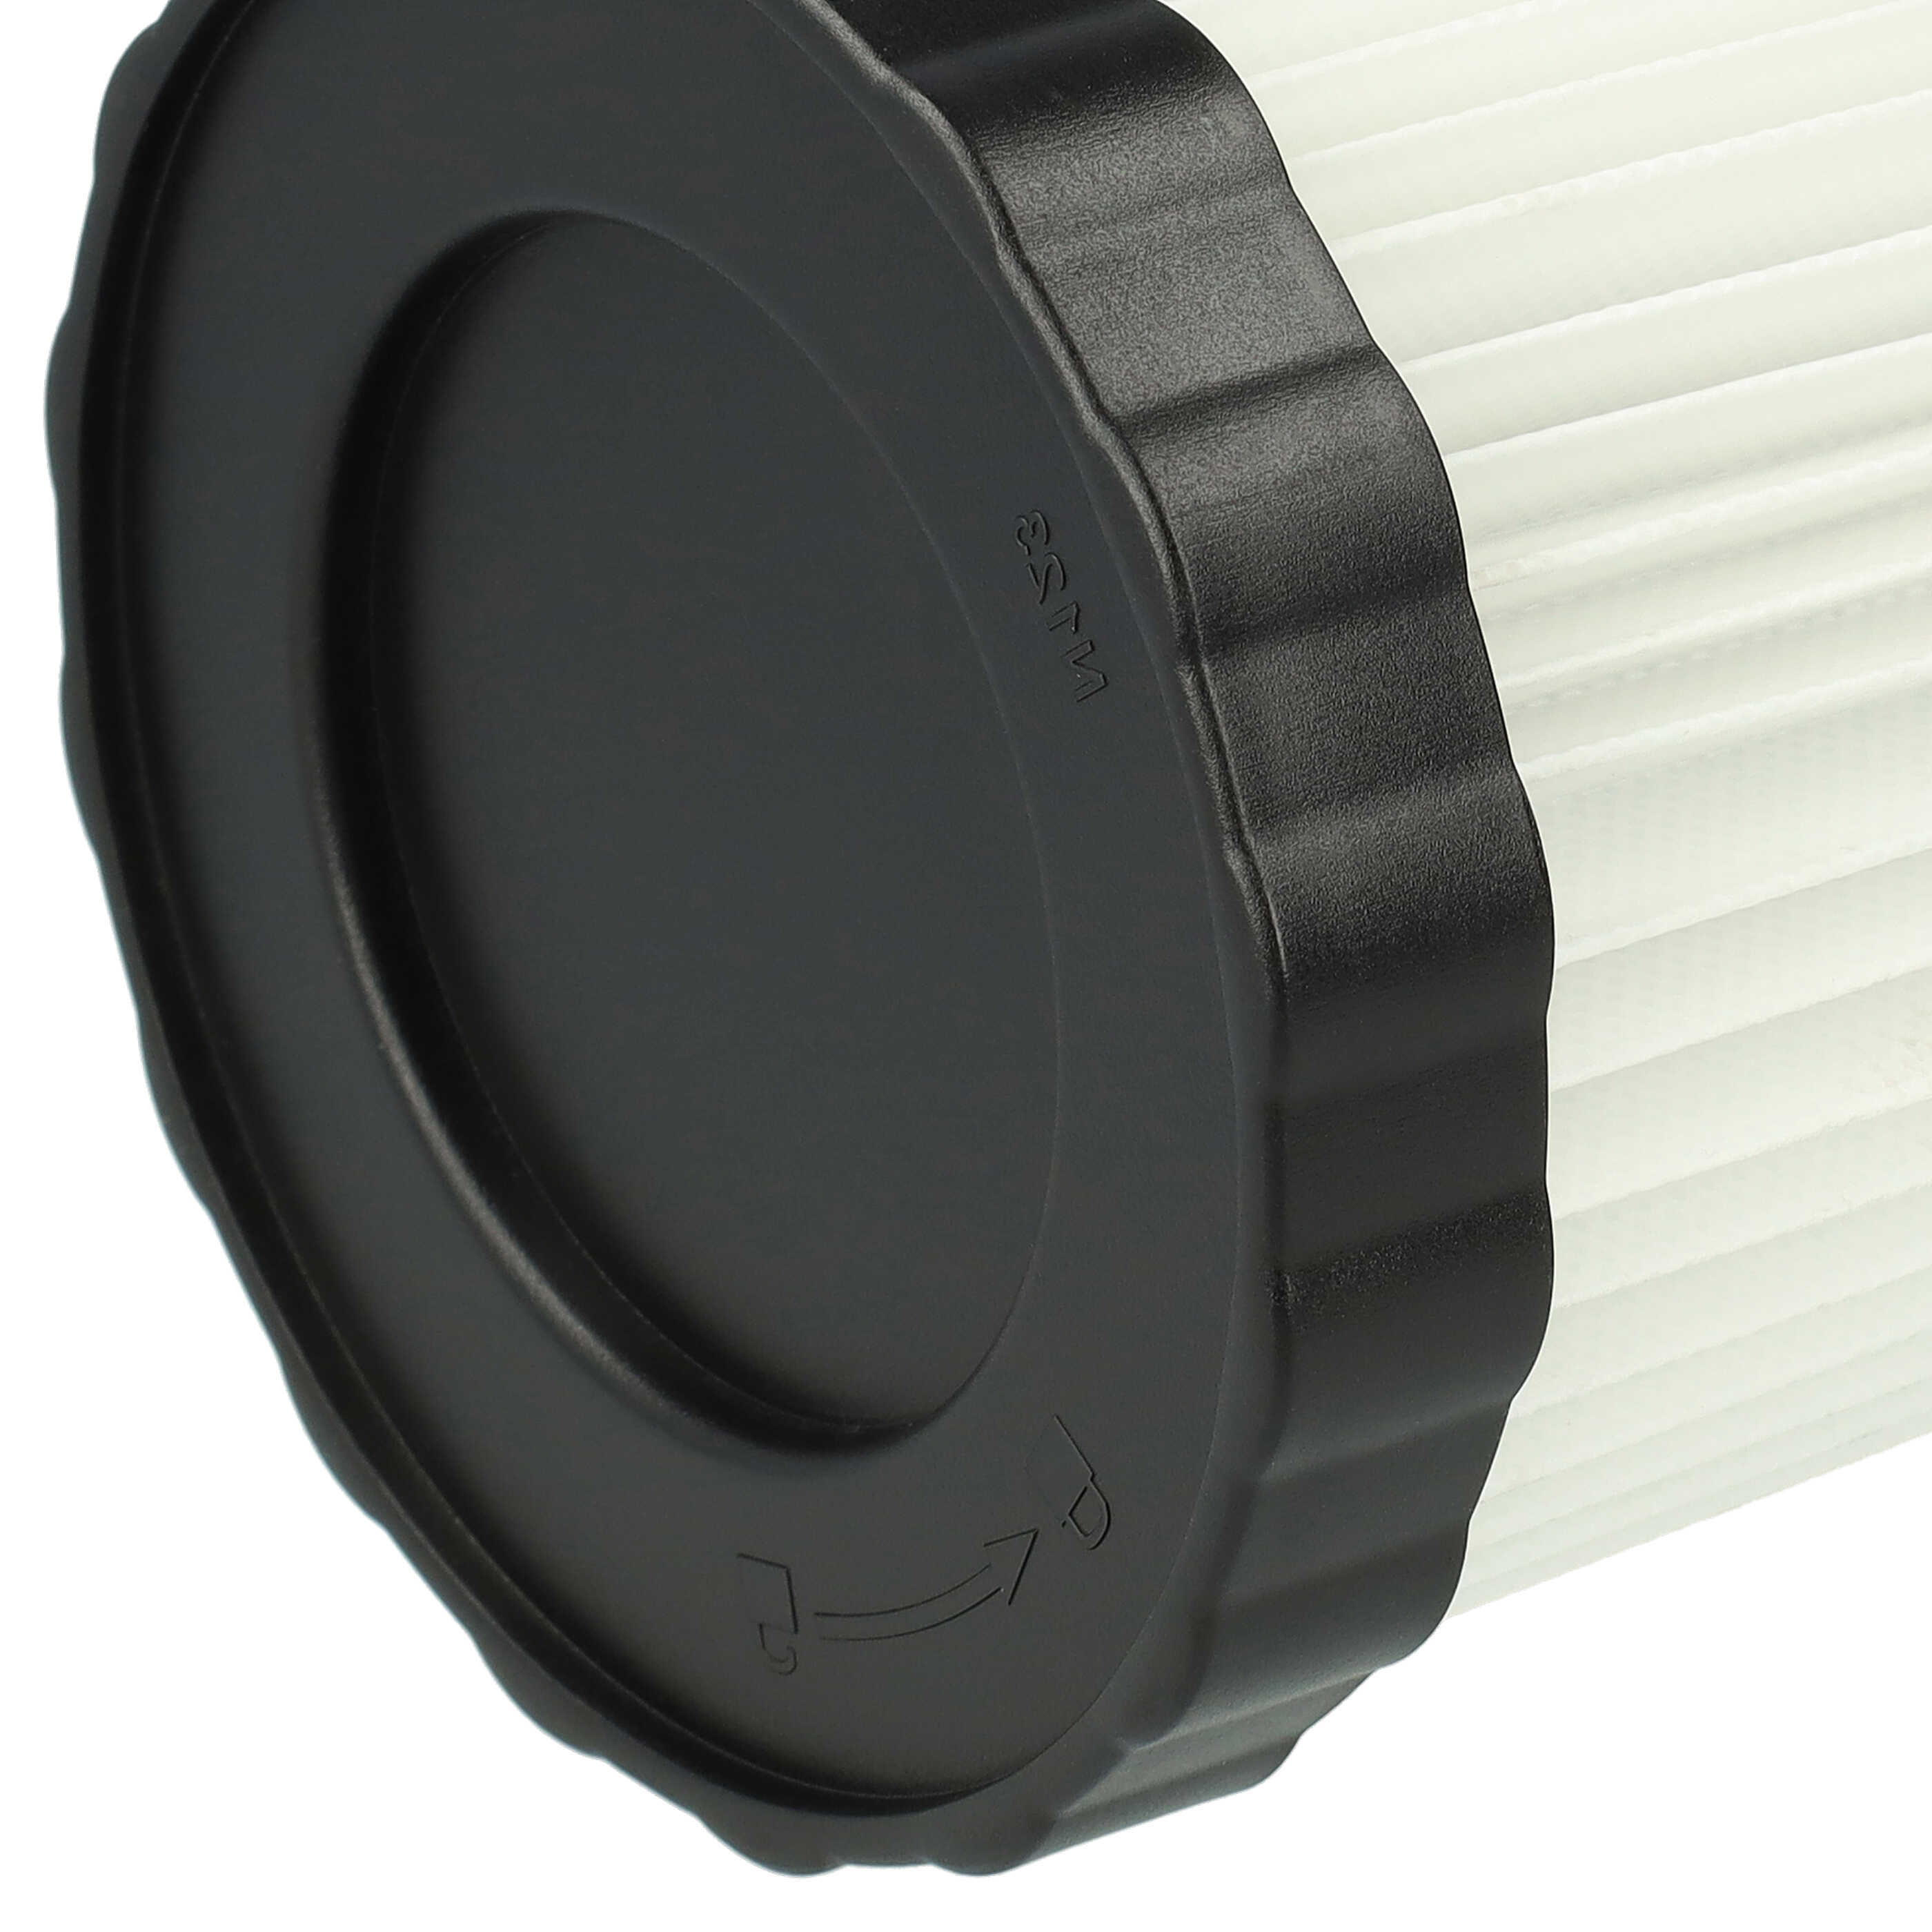 2x Filtre remplace Bosch 1 600 A01 1RT, 3165140917940, 2 608 000 663 pour aspirateur - filtre plissé